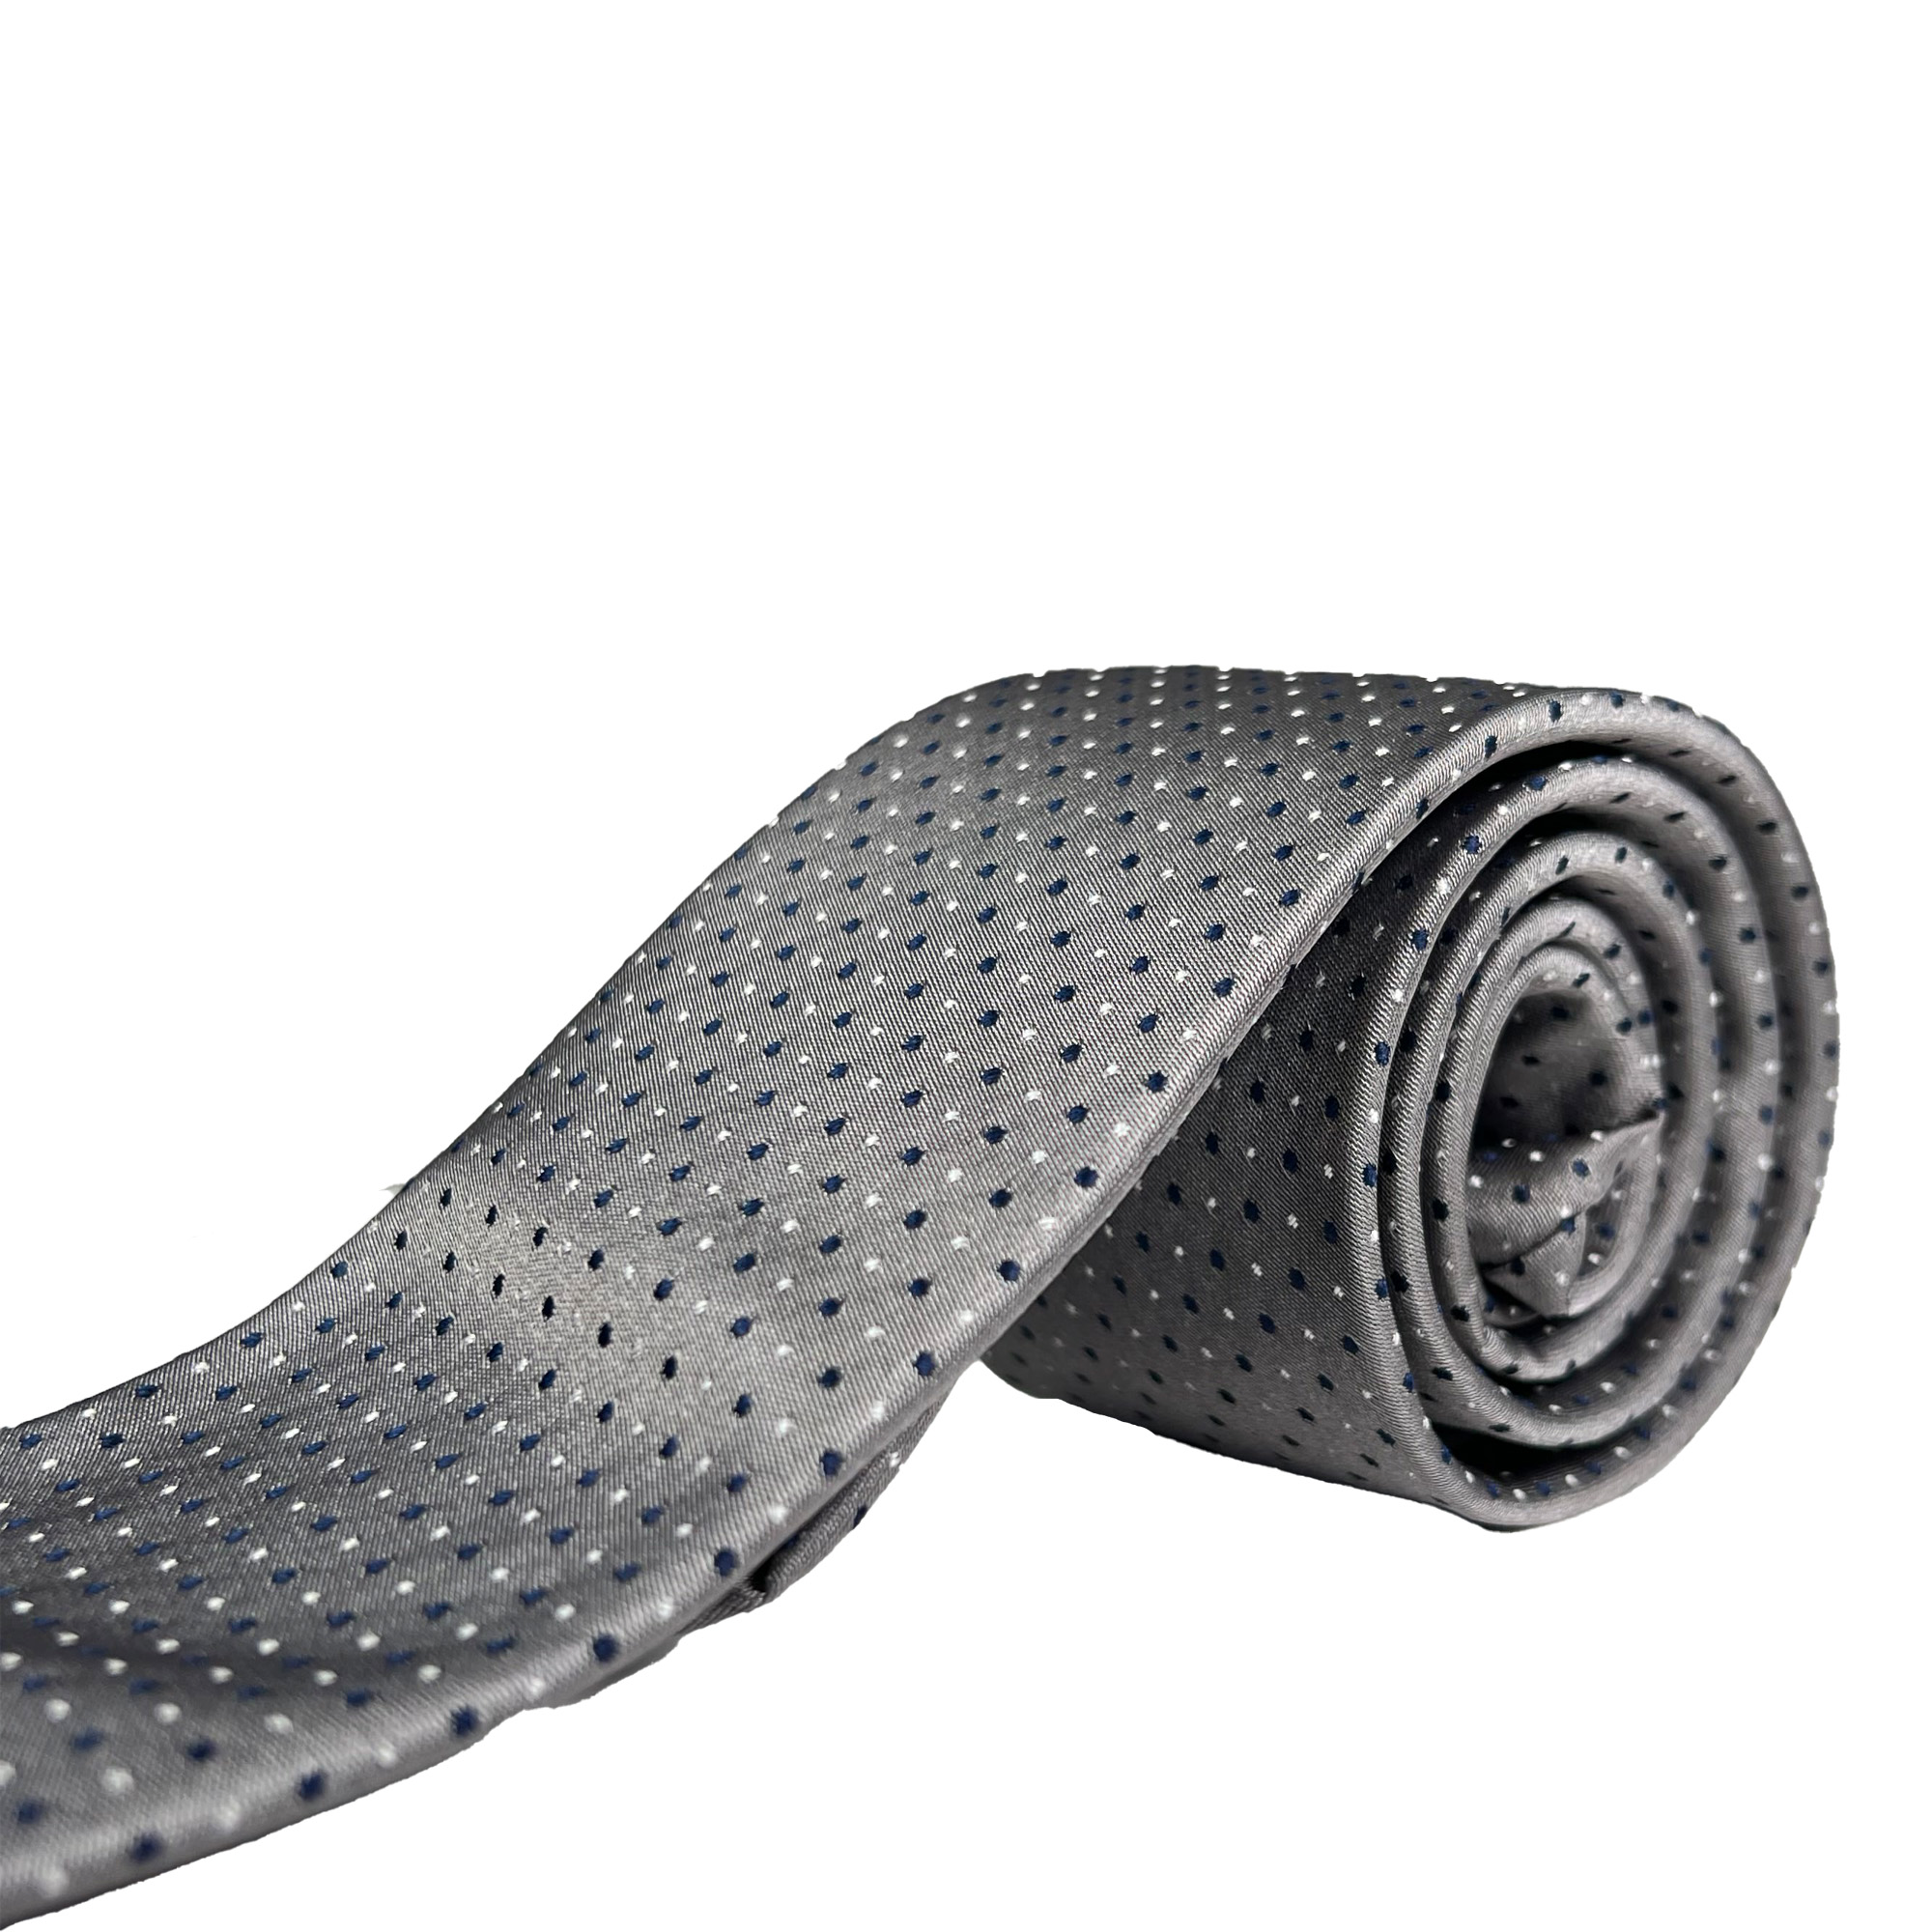 ست کراوات و دستمال جیب طوسی طرح نقطه مشکی و سفید